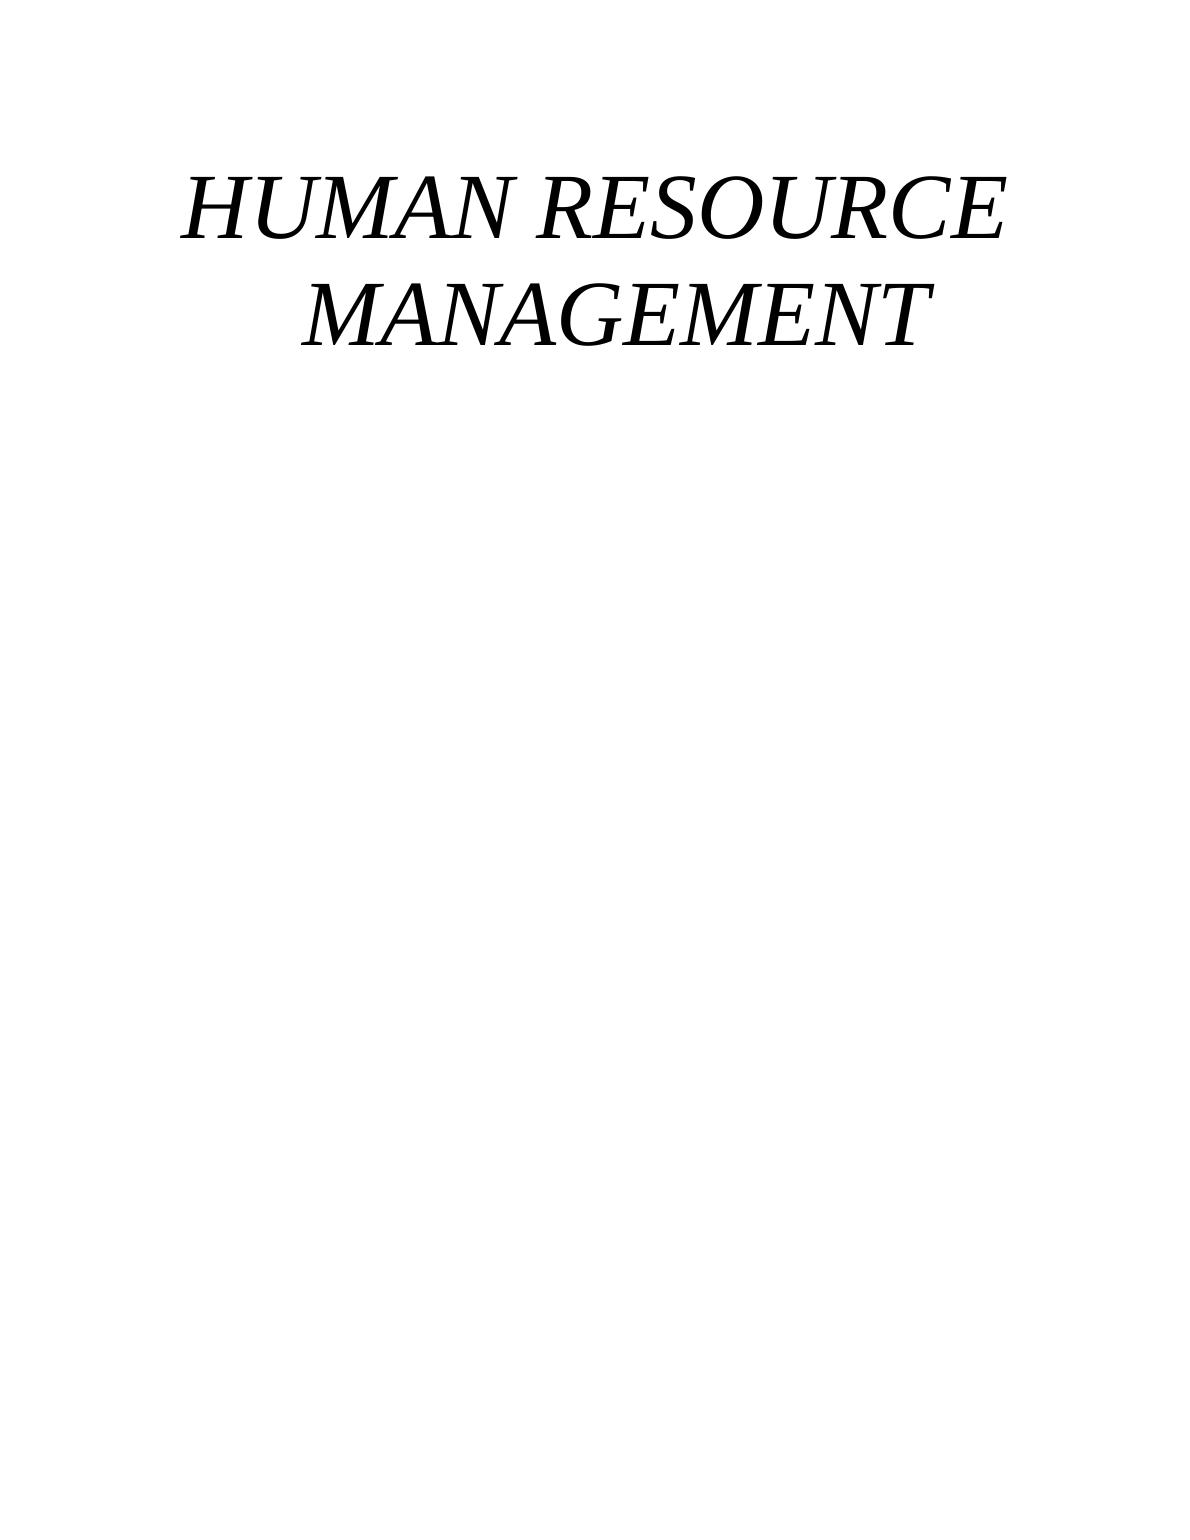 Human Resource Management - Tesco  Assignment_1